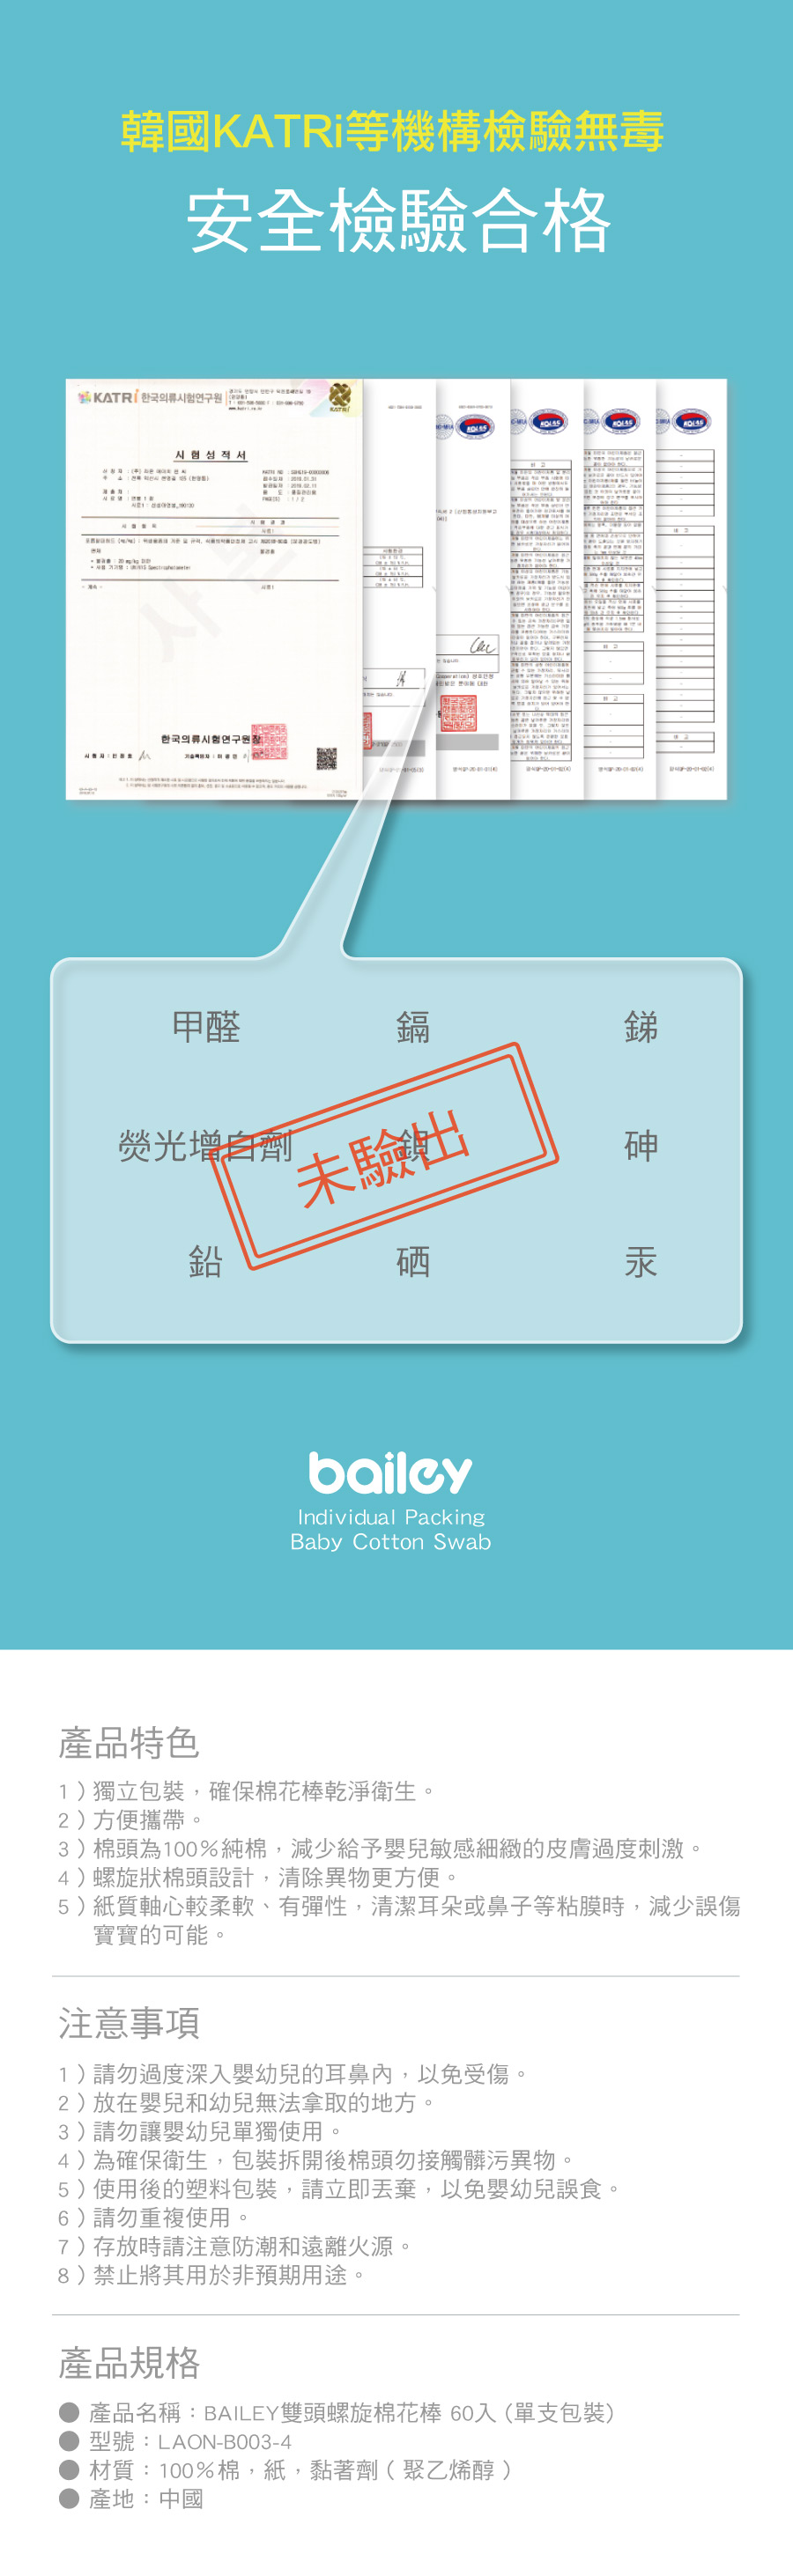 BAILEY雙頭螺旋棉花棒 檢驗報告、產品規格